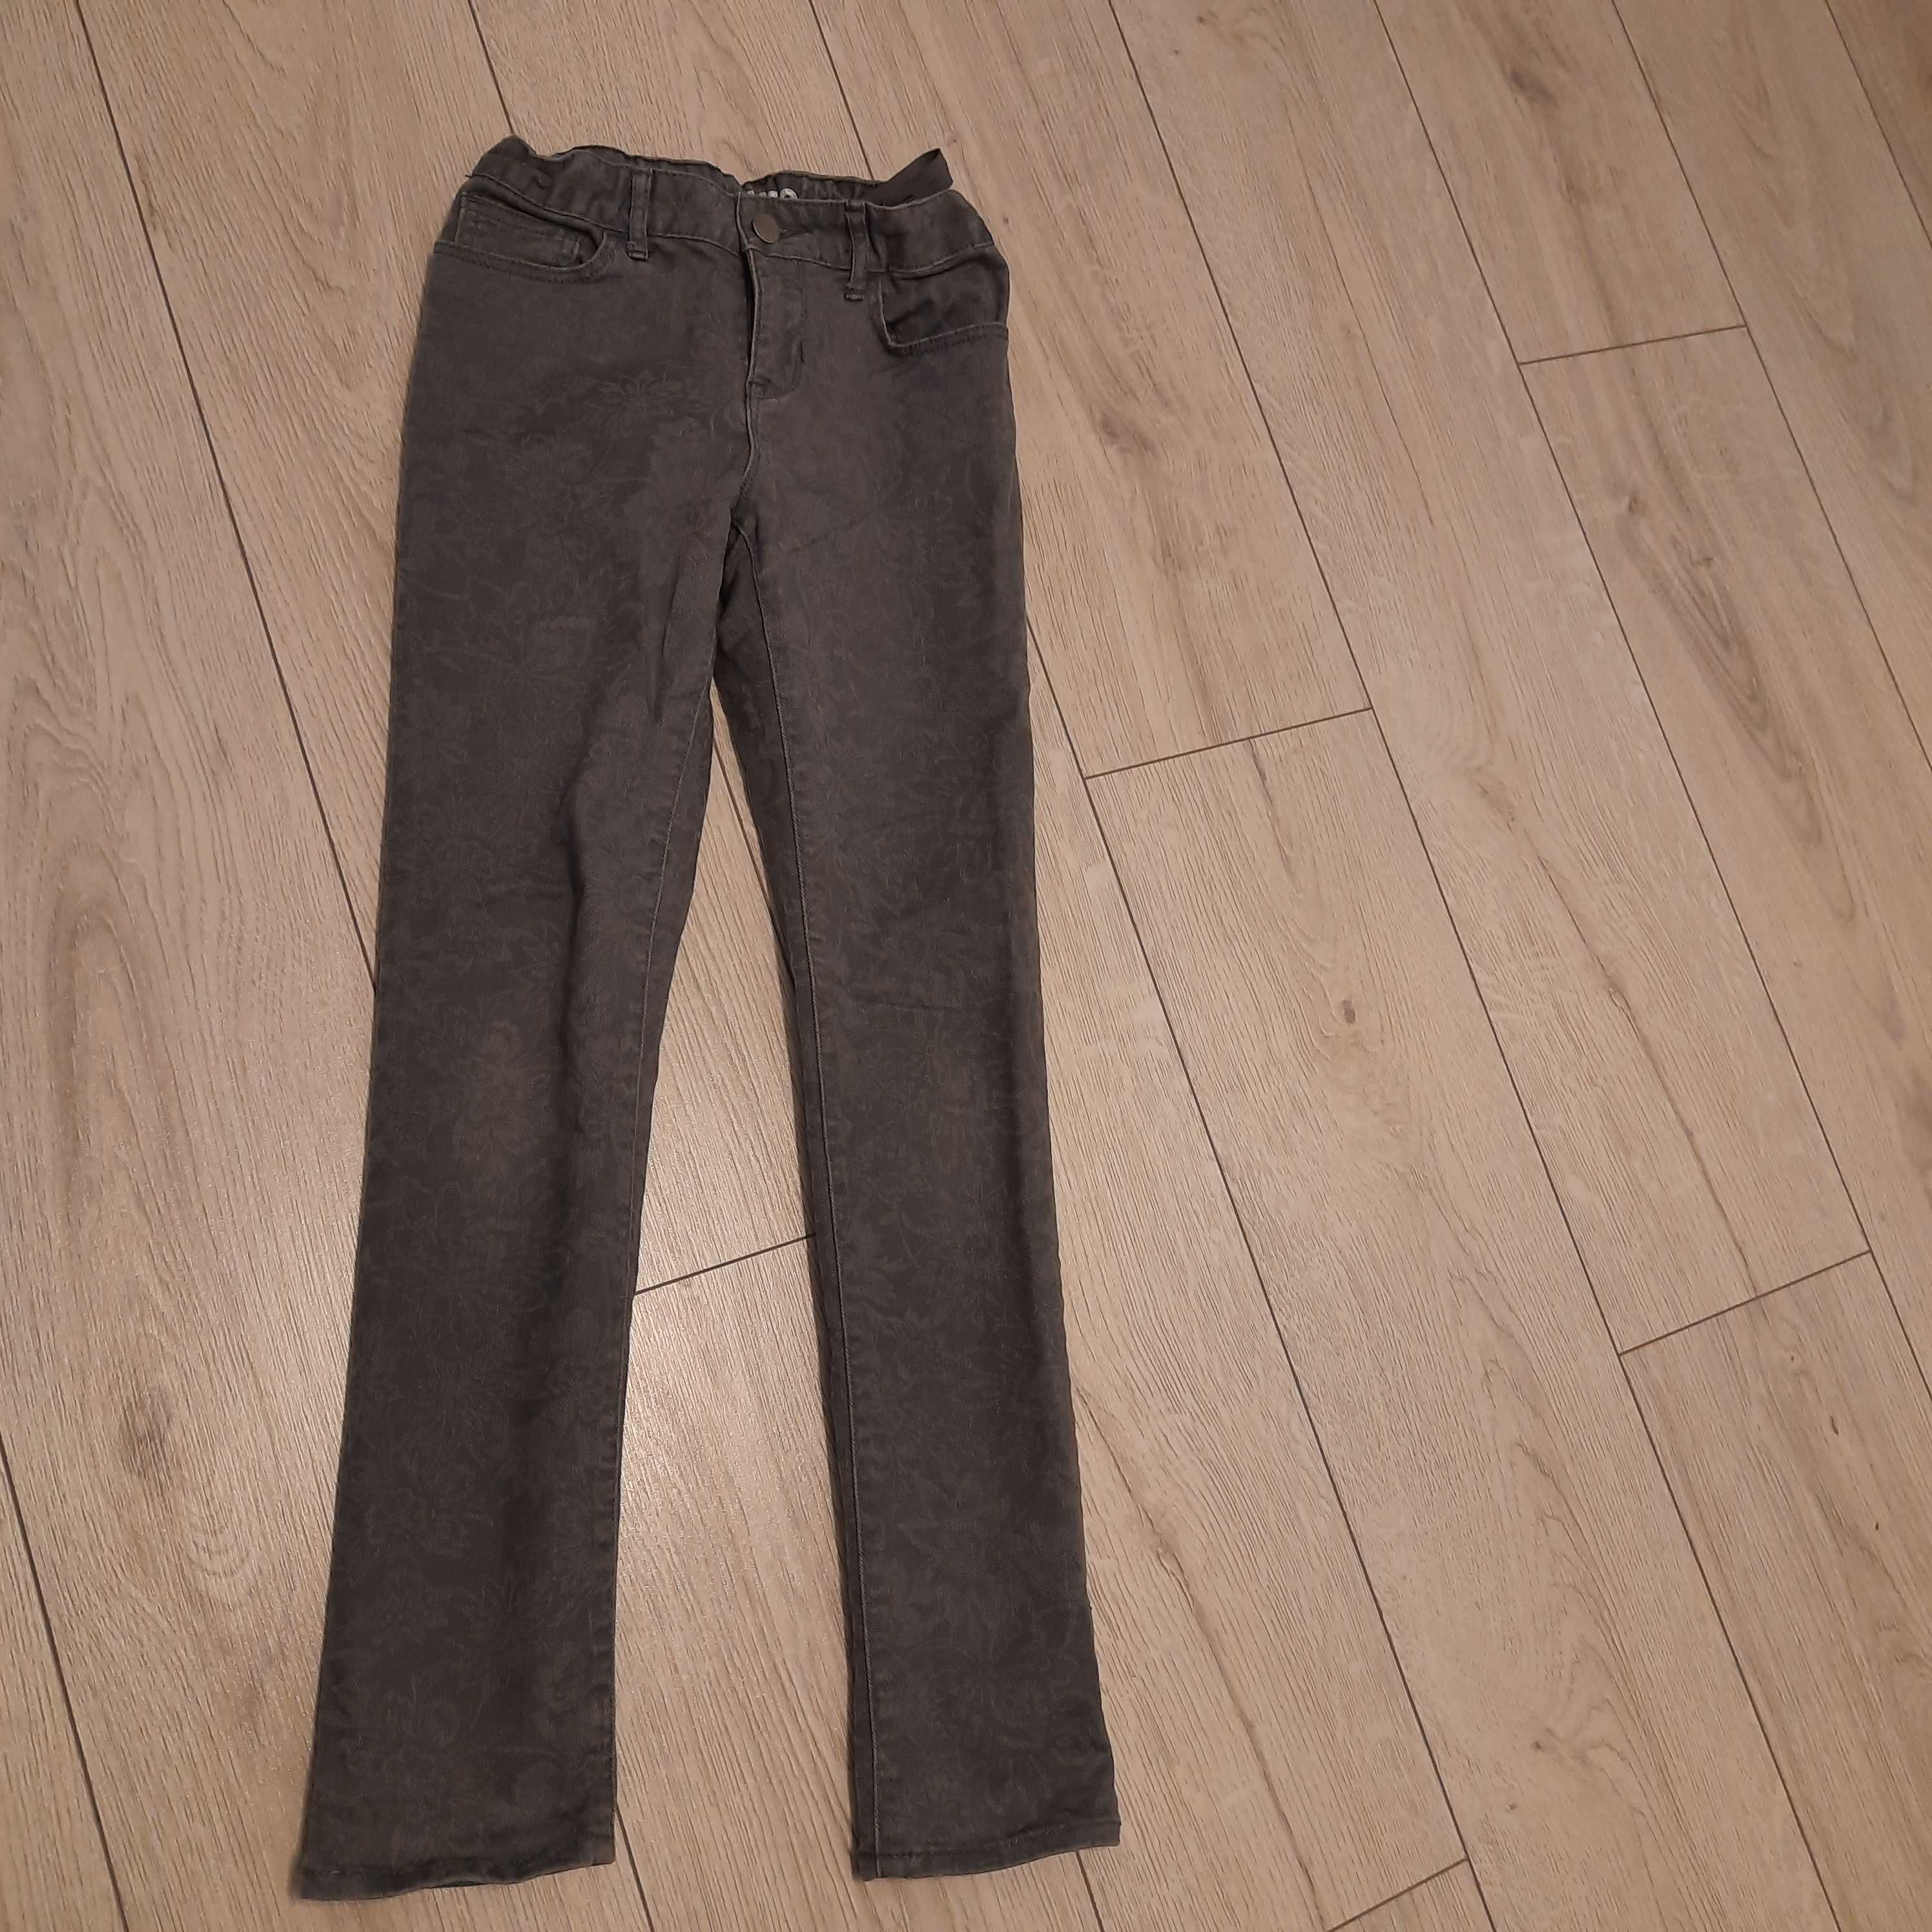 Spodnie szary jeans  10/11 lat